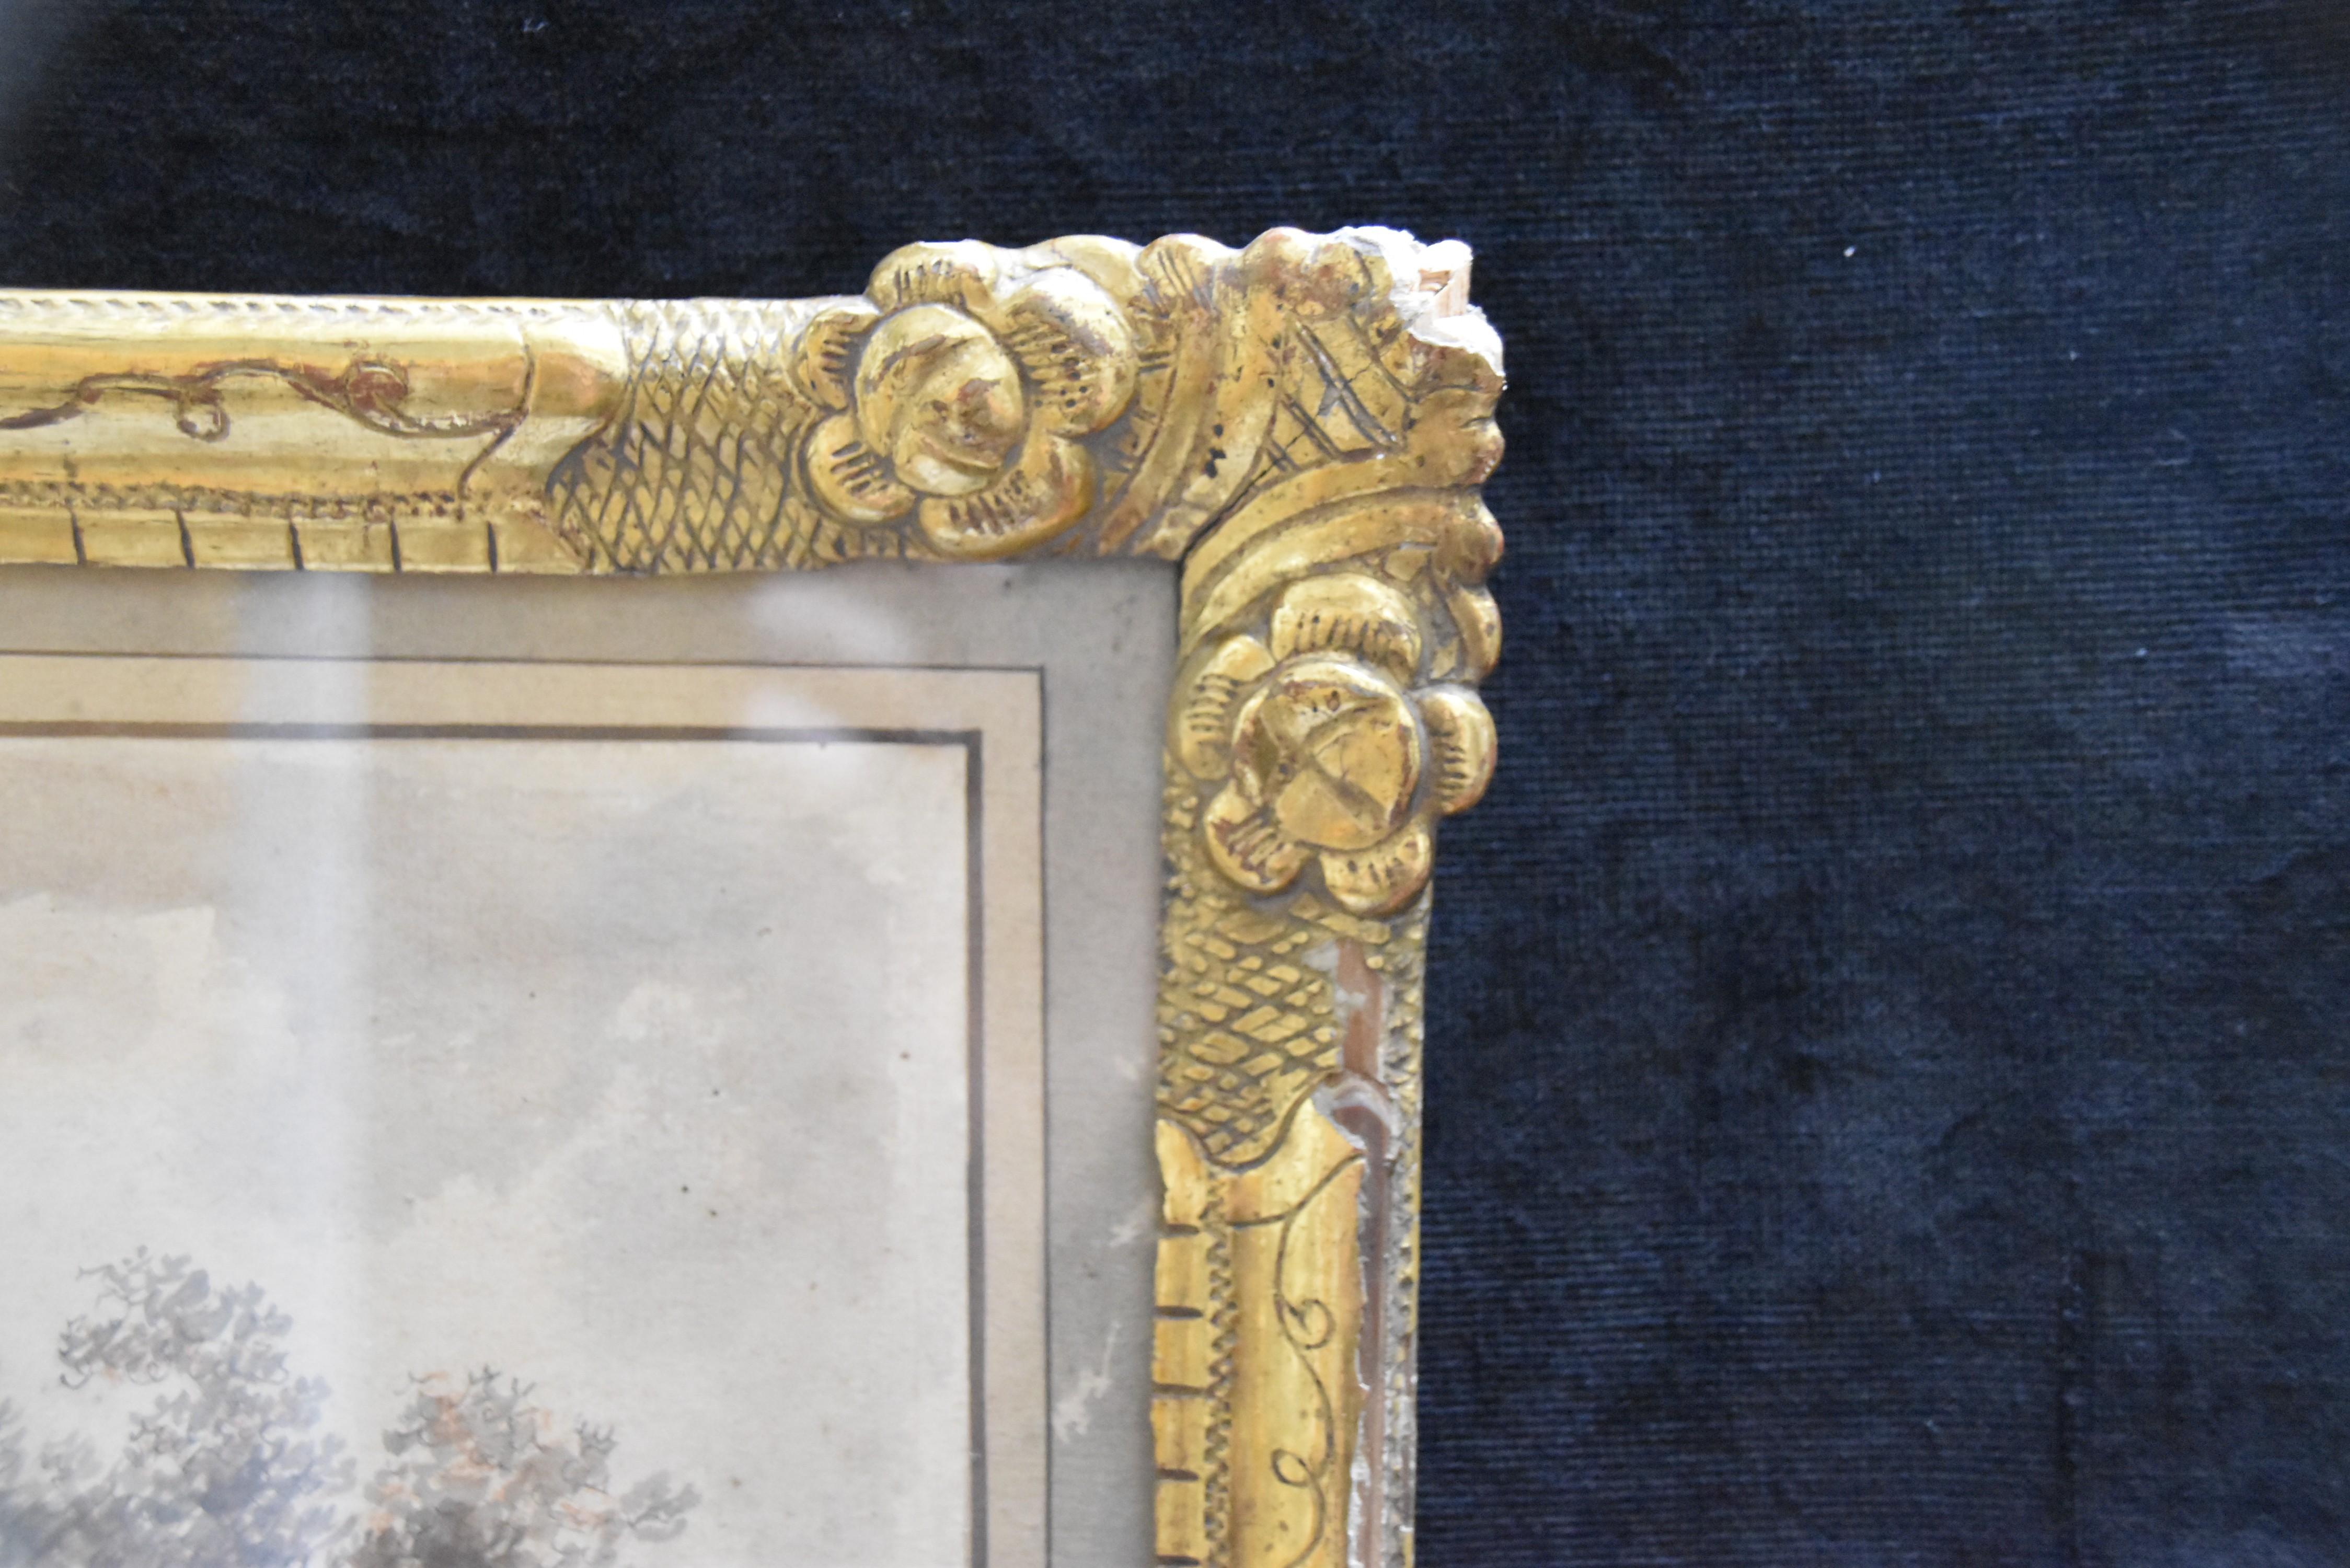 Frankreich um 1770
Blick auf ein befestigtes Dorf
Braune Tinte, braun lavierte Tinte und rote Kreide auf Papier 
24 x 34,5 cm
In recht gutem Zustand, einige Stockflecken im oberen Teil, ein reparierter Riss unten links, eine Falte unten rechts